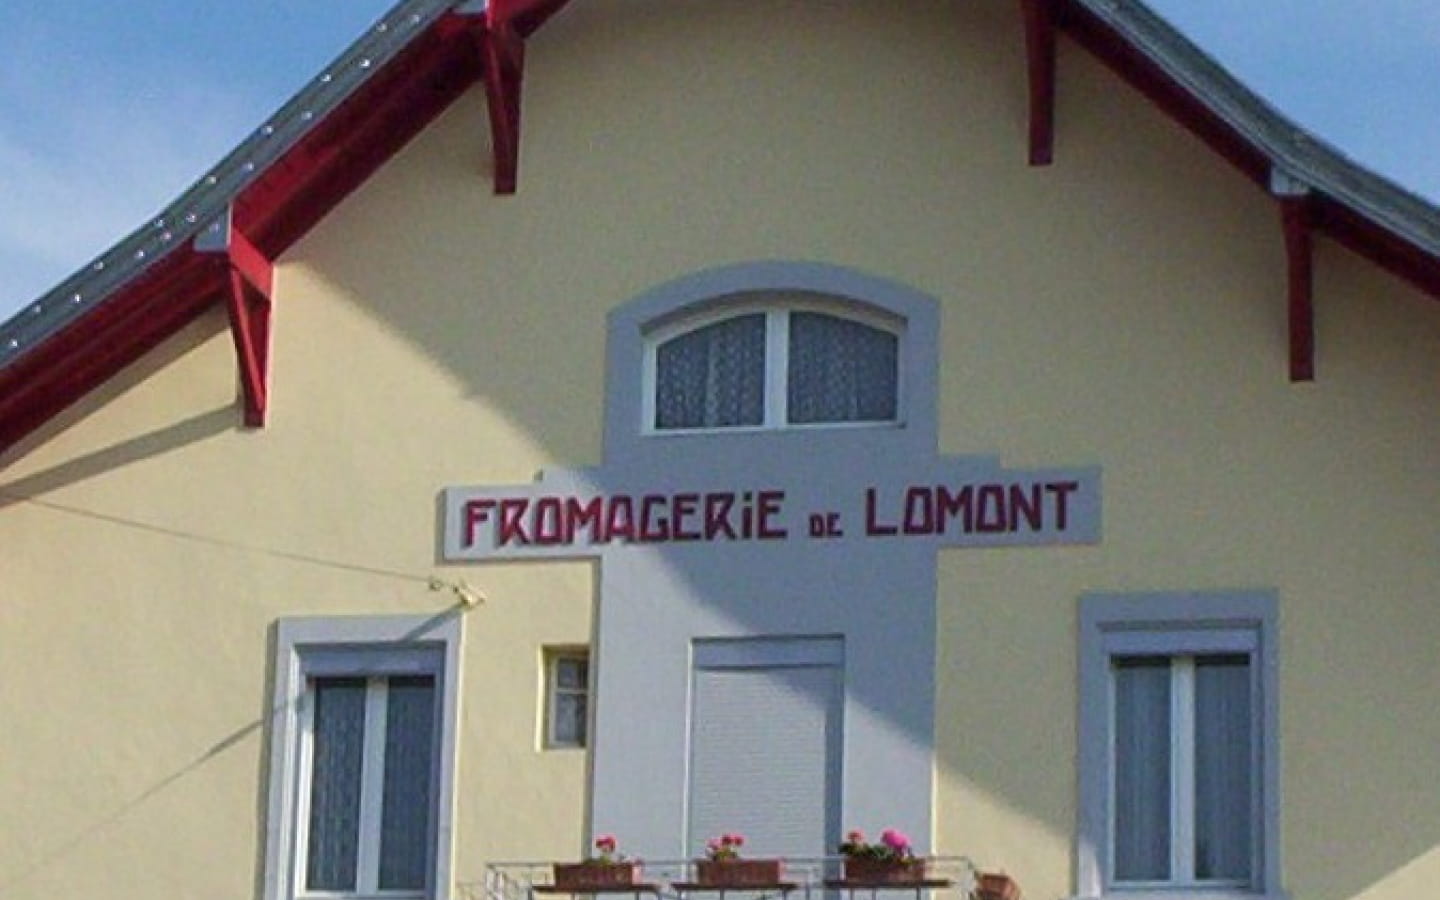 Fromagerie de Lomont